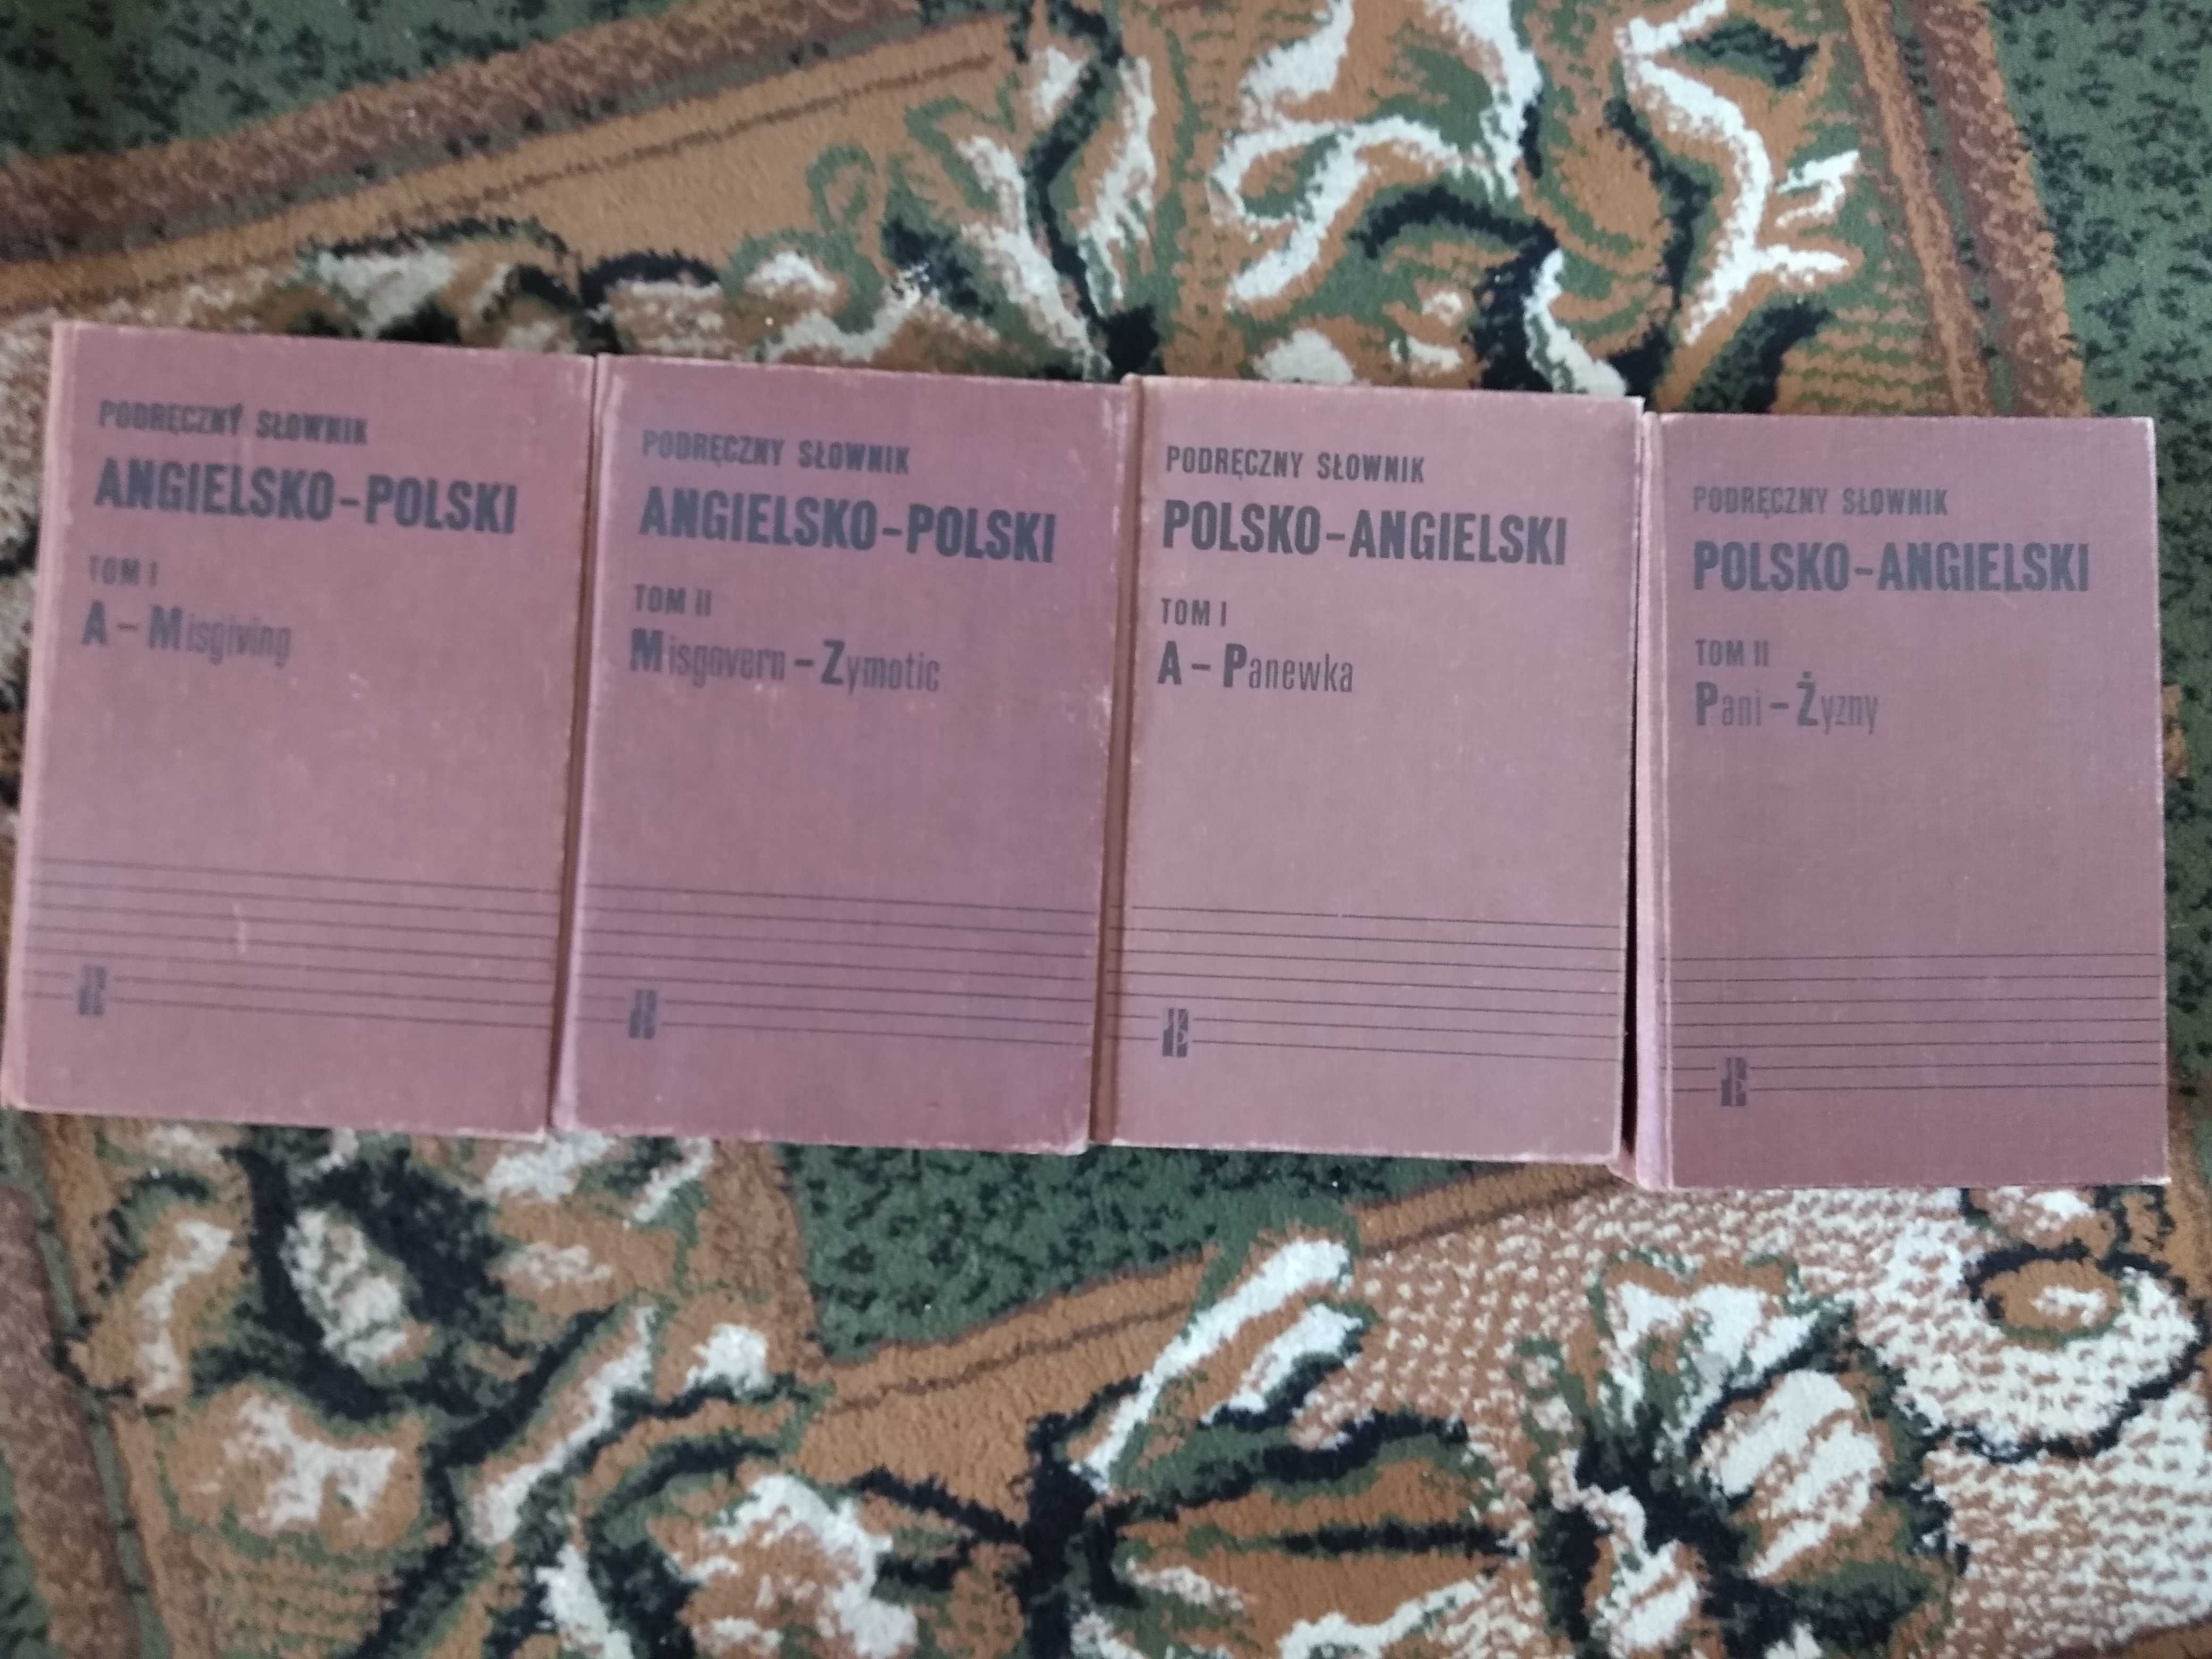 Podręczny słownik polsko-angielski i angielsko-polski / 4 tomy / 1990